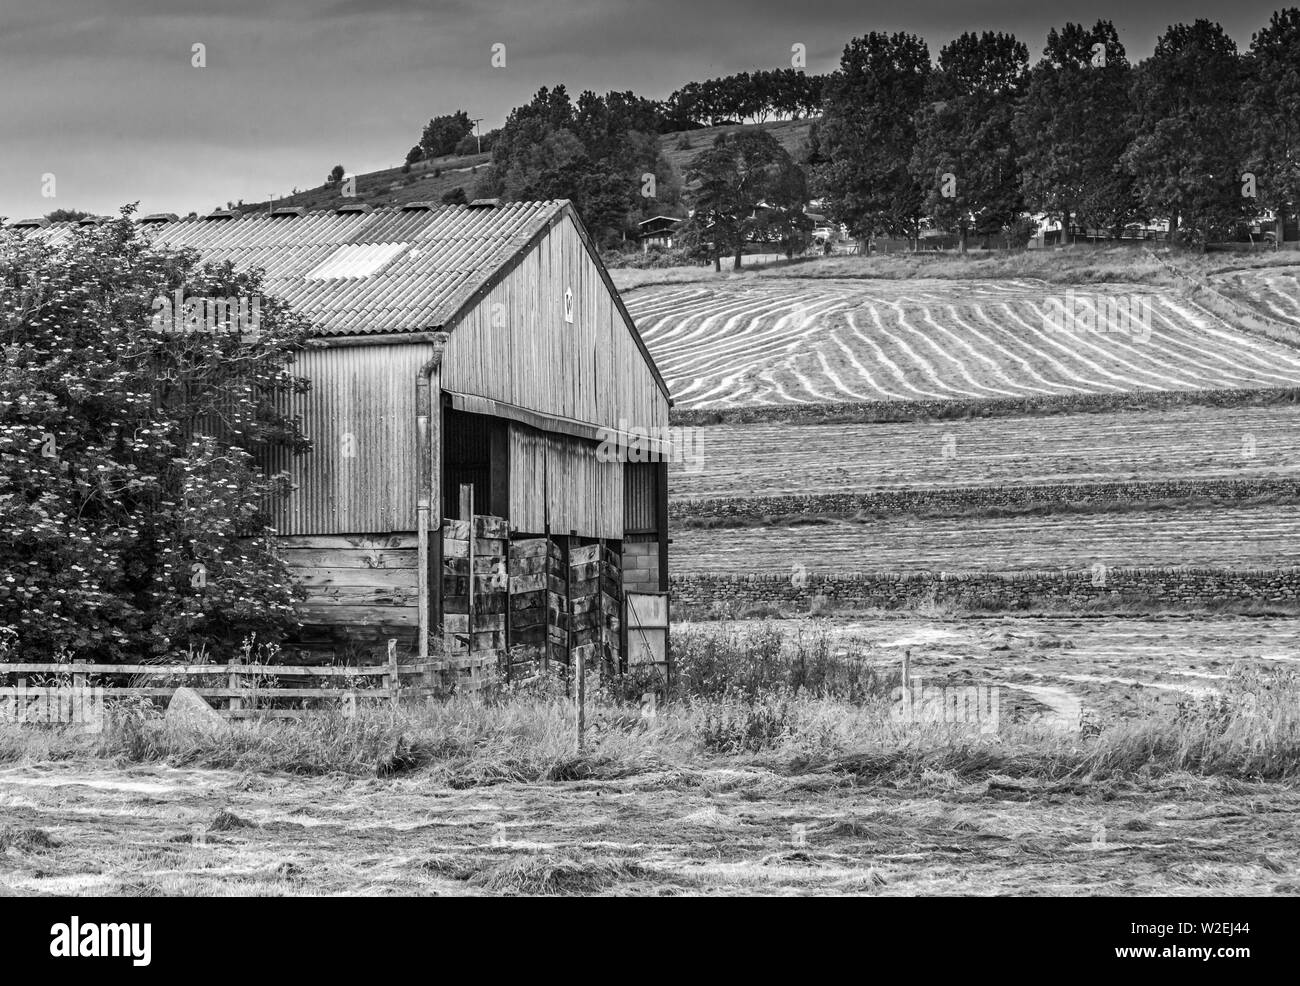 Bianco e nero campagna scena mostrando un vecchio fienile, strisce di campi e muri in pietra a secco. Prese a Baildon, Yorkshire. Foto Stock